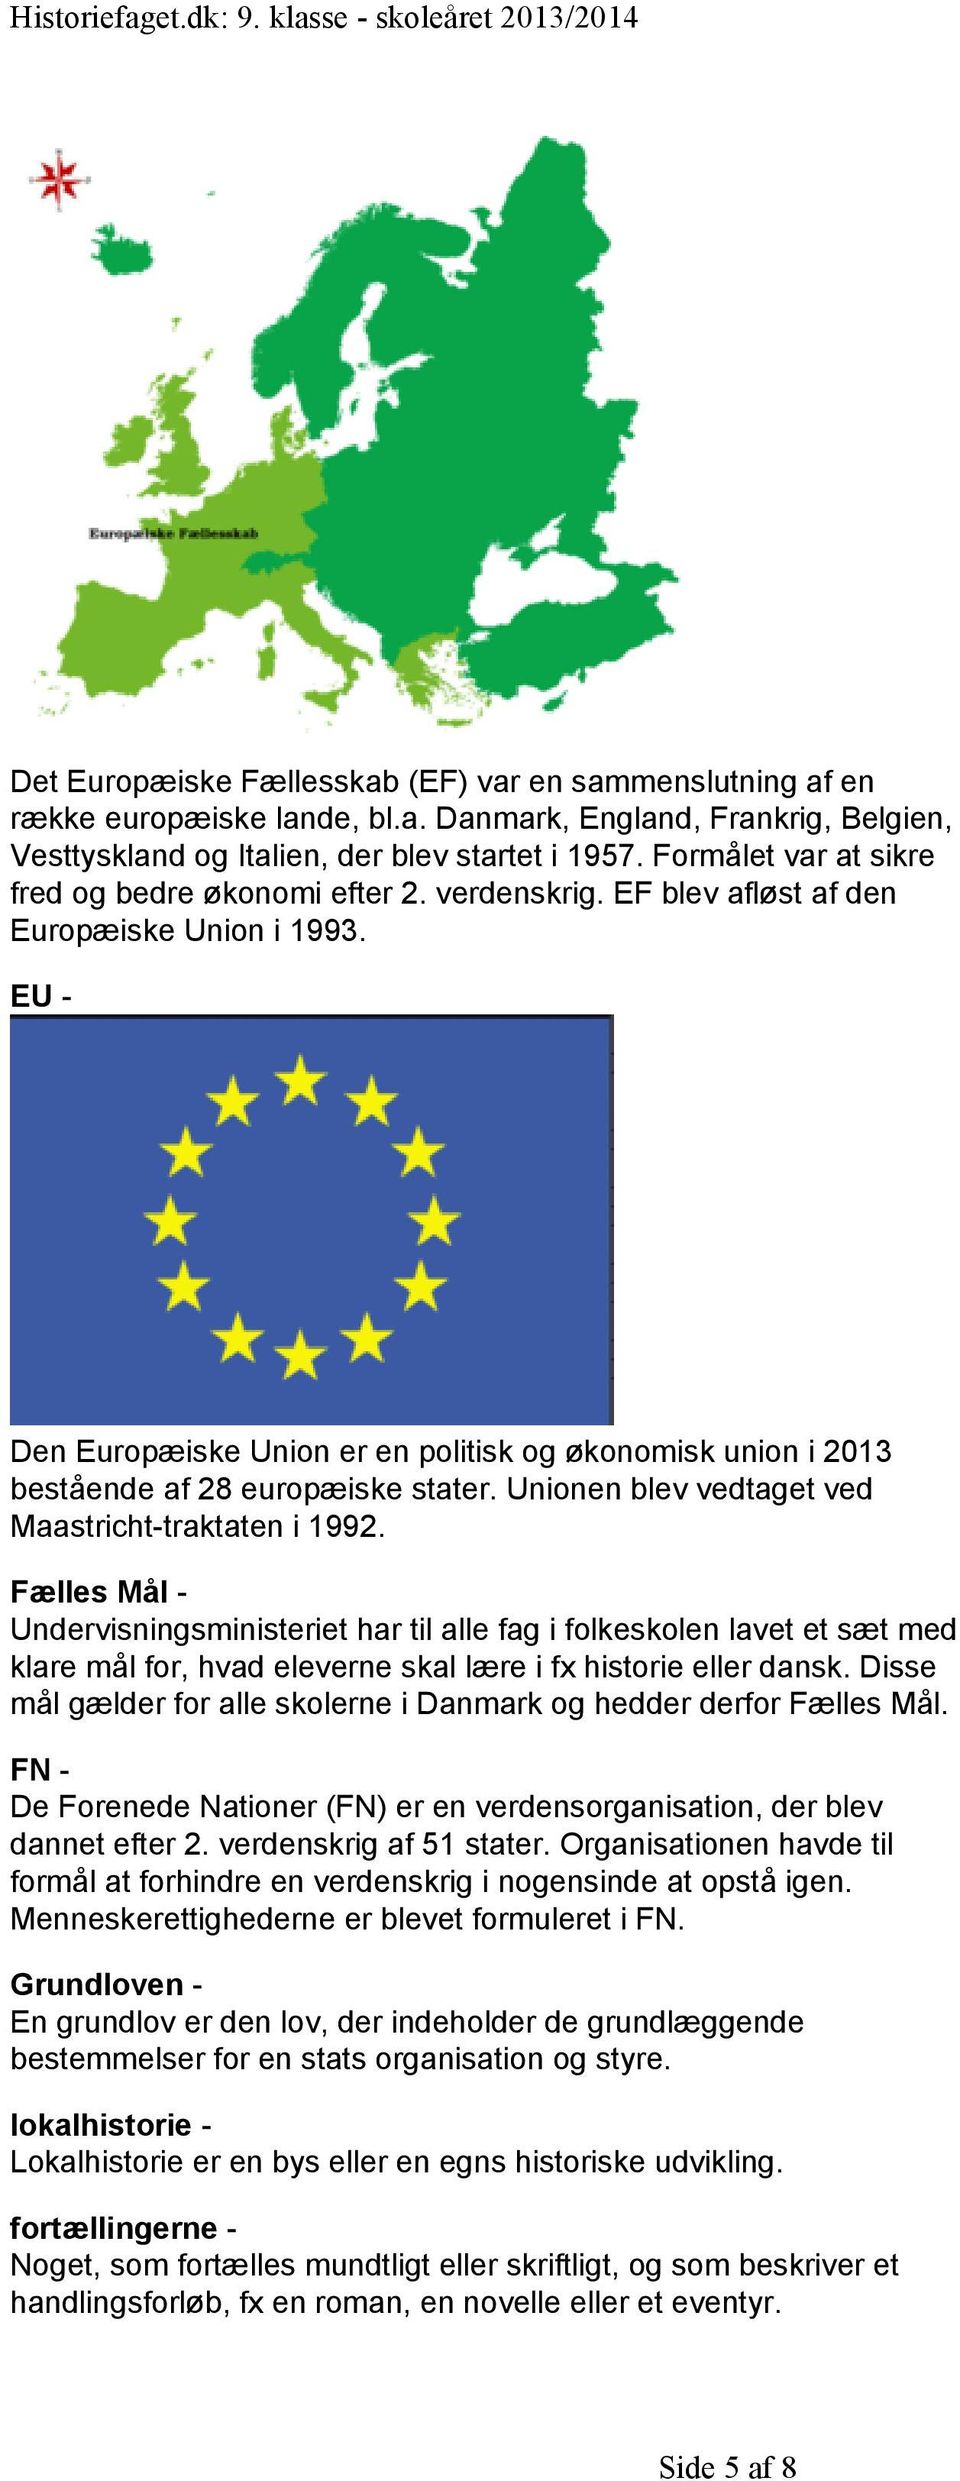 EU - Den Europæiske Union er en politisk og økonomisk union i 2013 bestående af 28 europæiske stater. Unionen blev vedtaget ved Maastricht-traktaten i 1992.